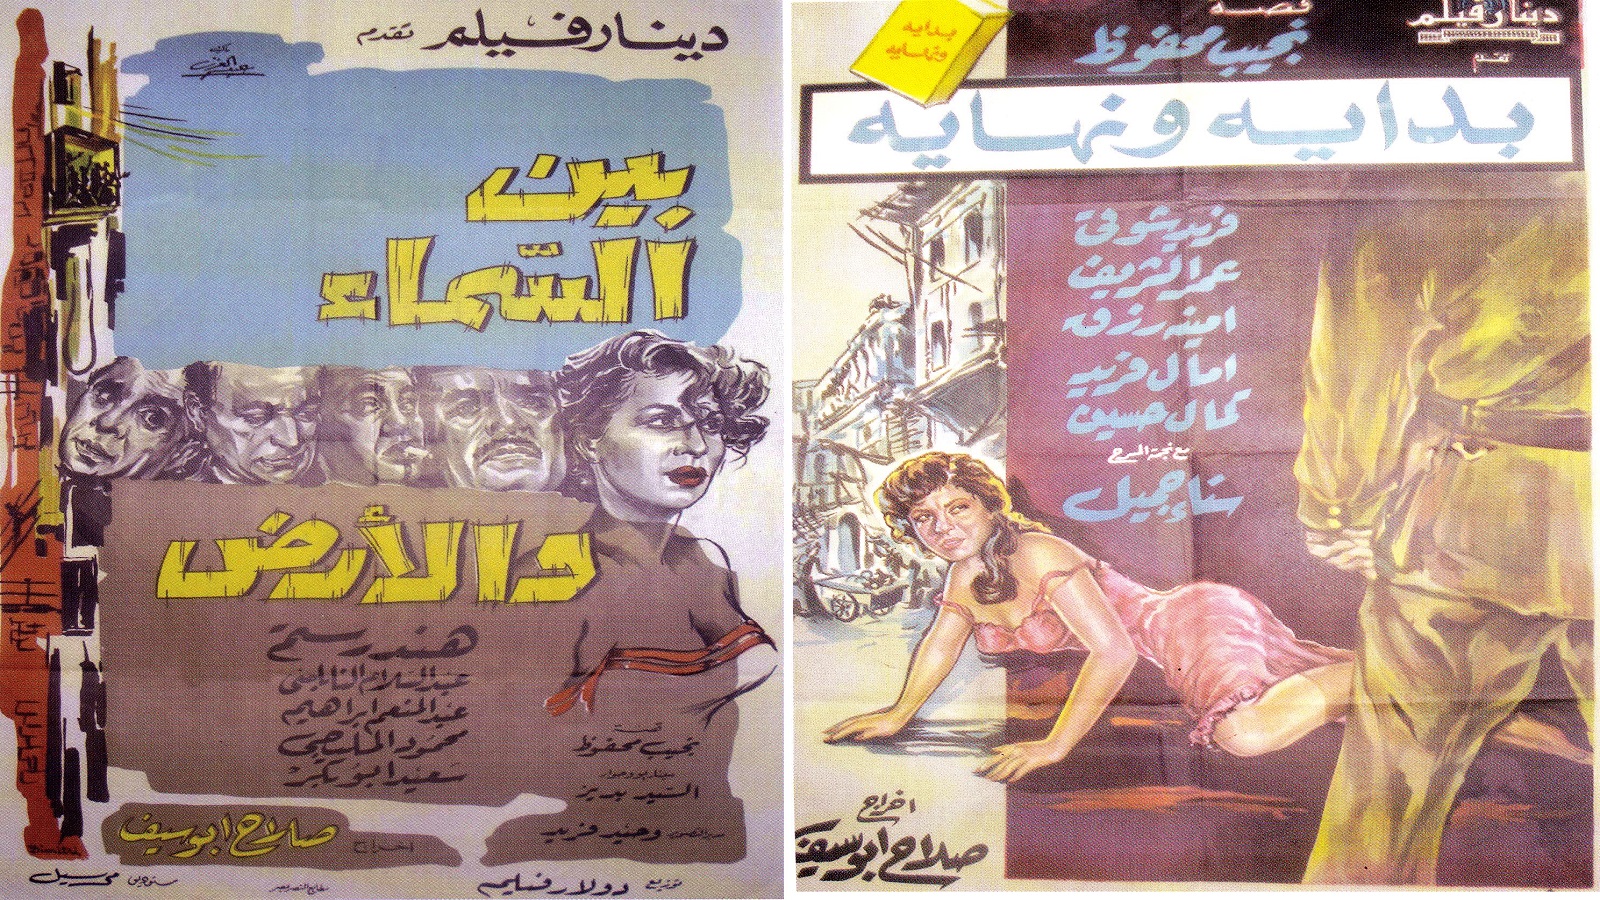 السينما المصرية في زمن عبد الناصر